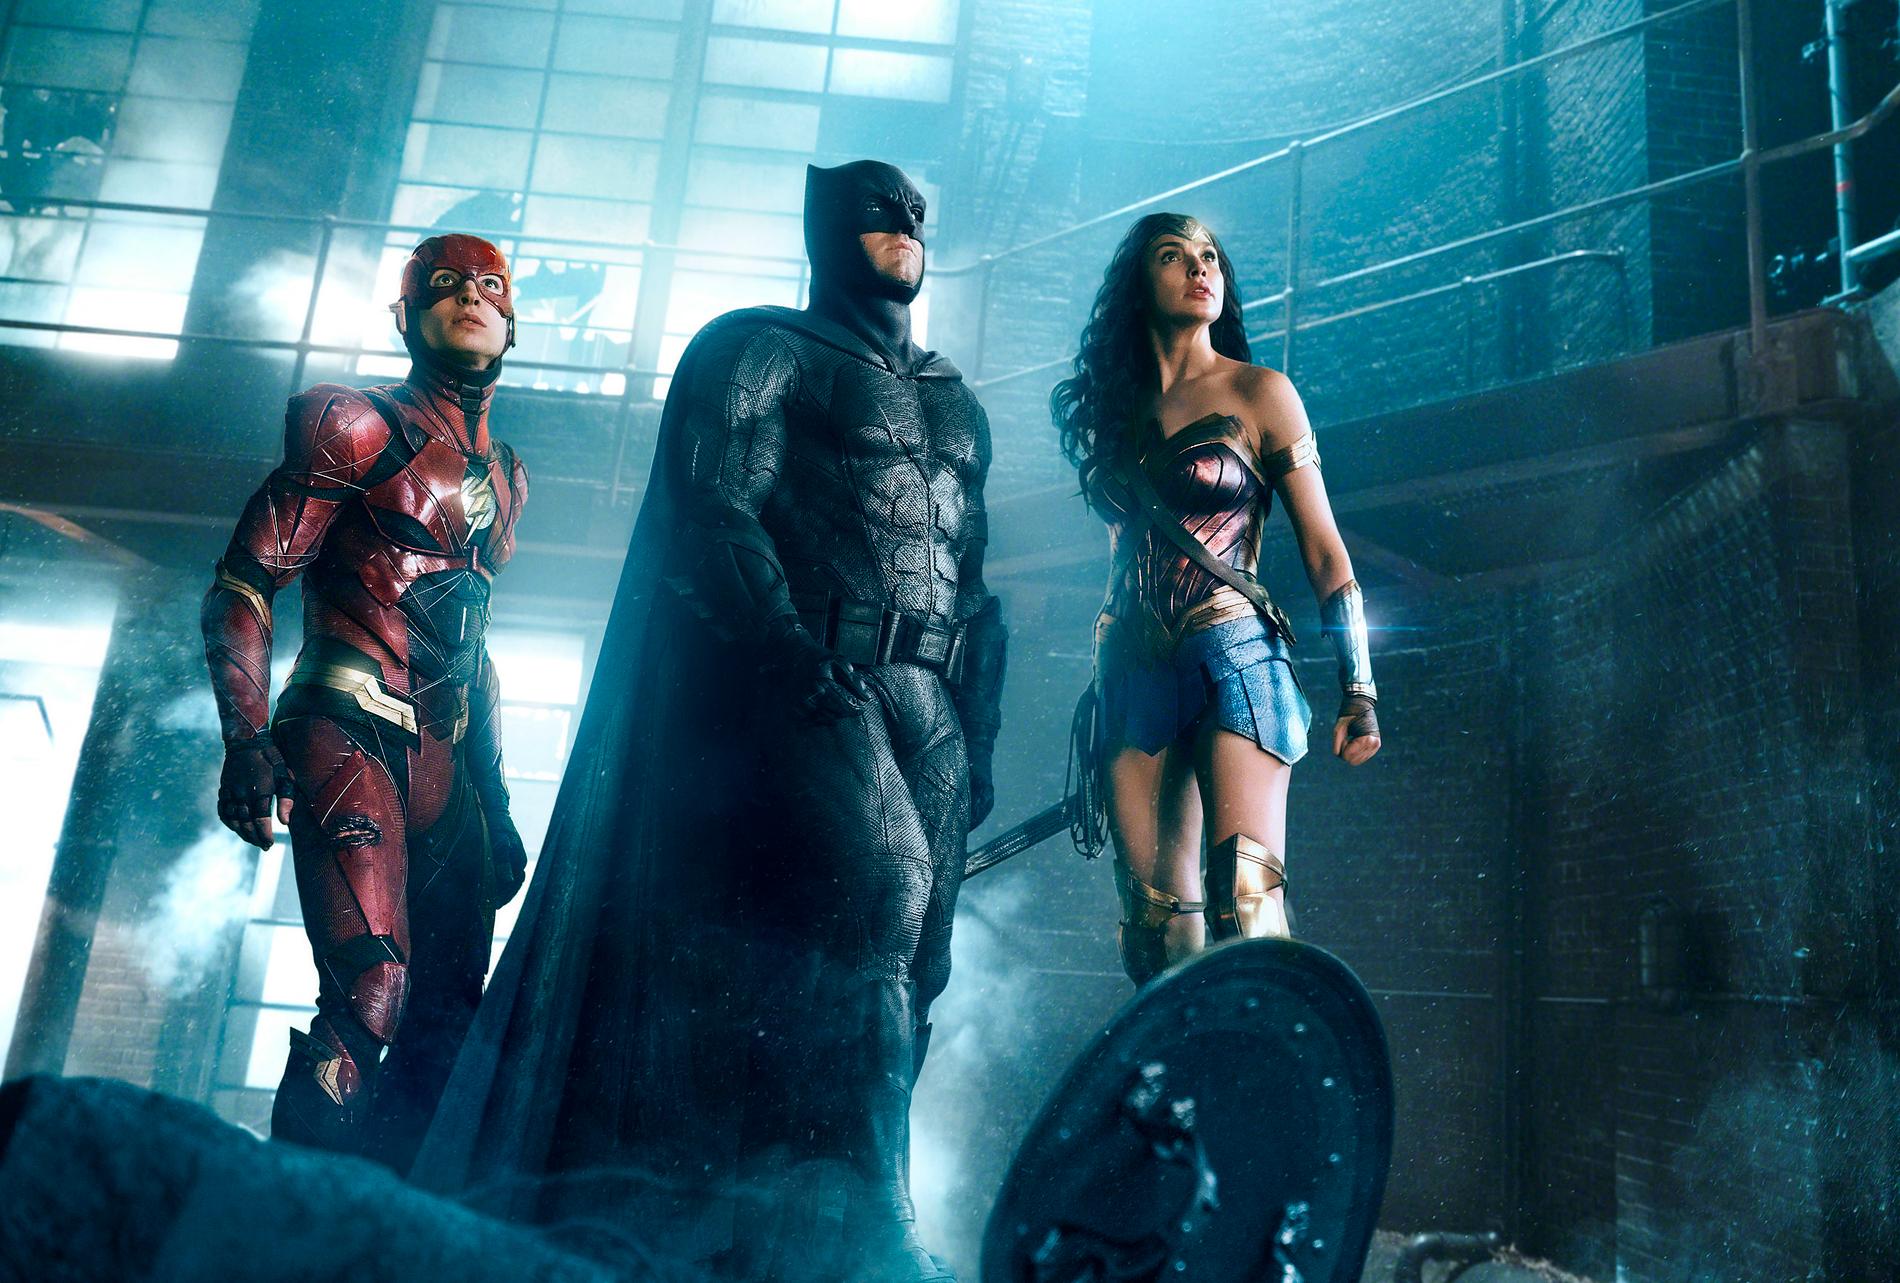 Utskälld, bespottad och hånad – men chans på revansch? Superhjältefilmen "Justice league" stöps om enligt regissören Zack Snyders ursprungliga vision och har premiär på nya strömningstjänsten HBO Max nästa år. Arkivbild.